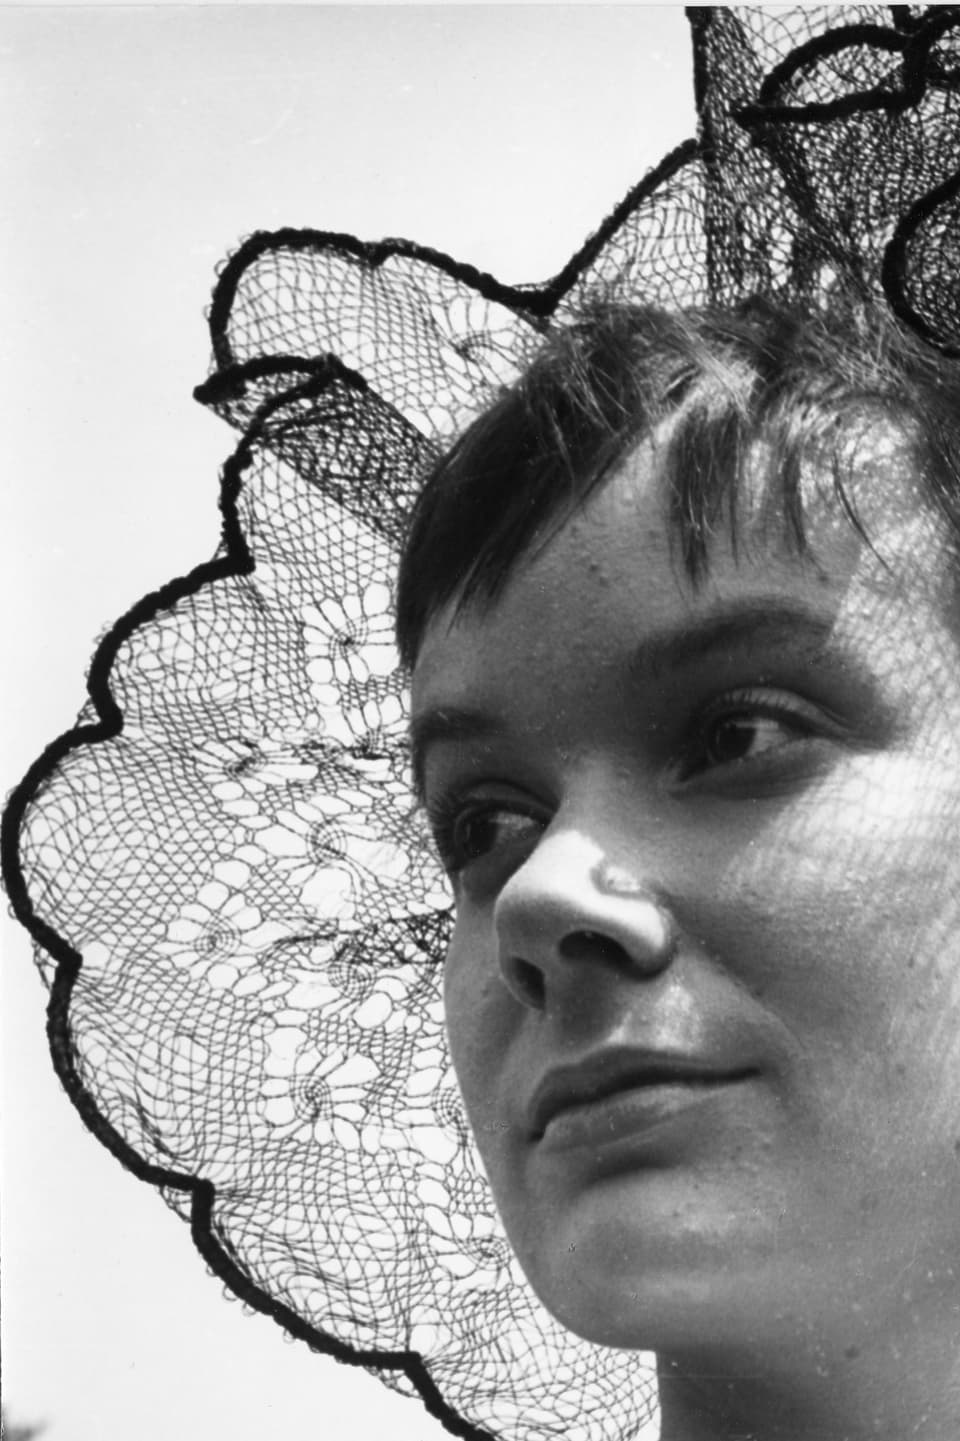 Untersichtiges Portrait von Änneli mit einem Netzhut.